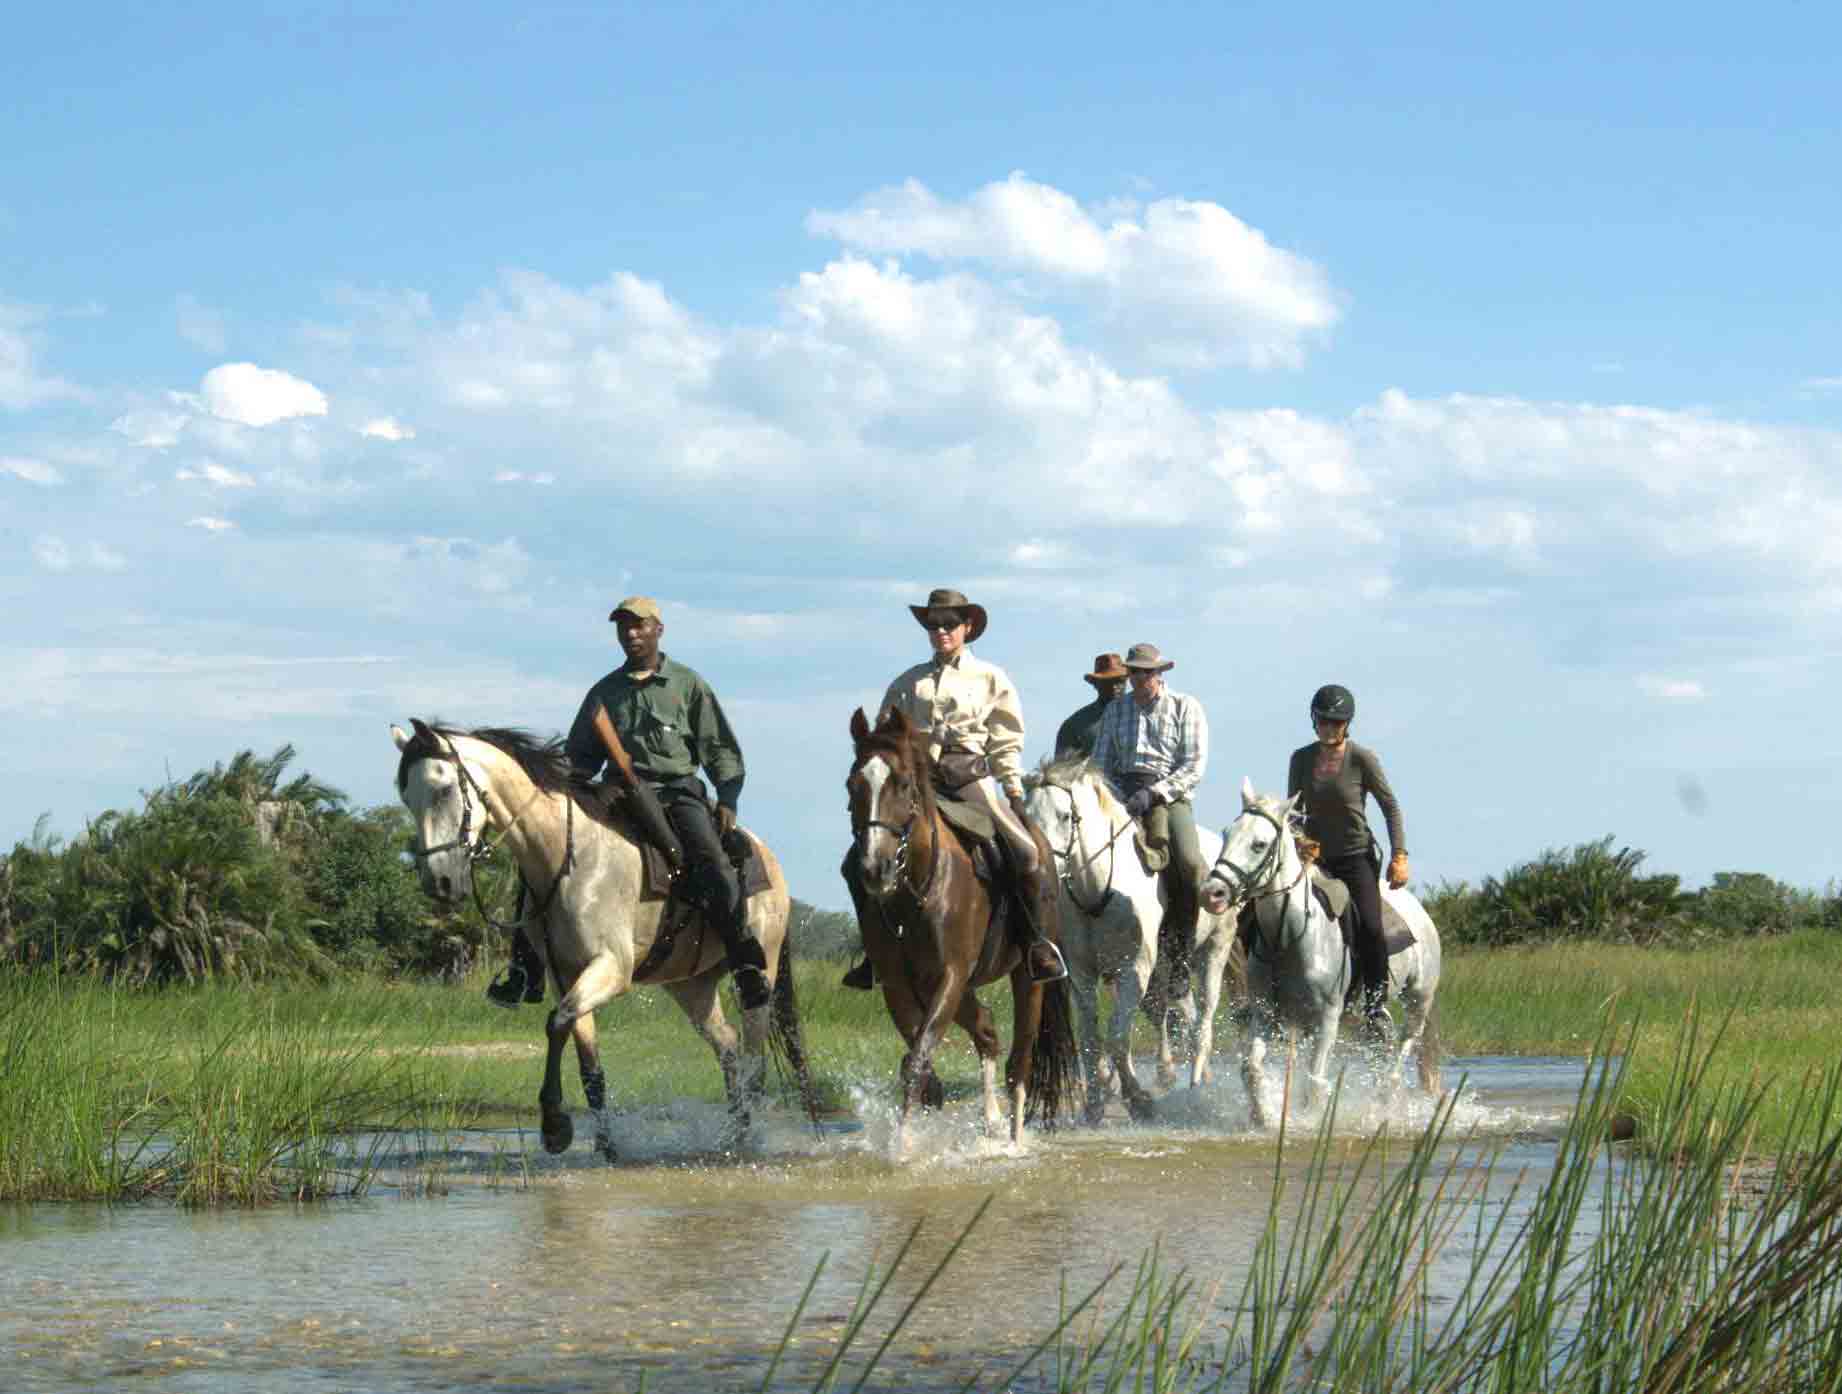 Randonnée équestres et safaris à cheval au Botswana (Afrique Australe) dans le Delta de l'Okavango - Randocheval / Absolu Voyages